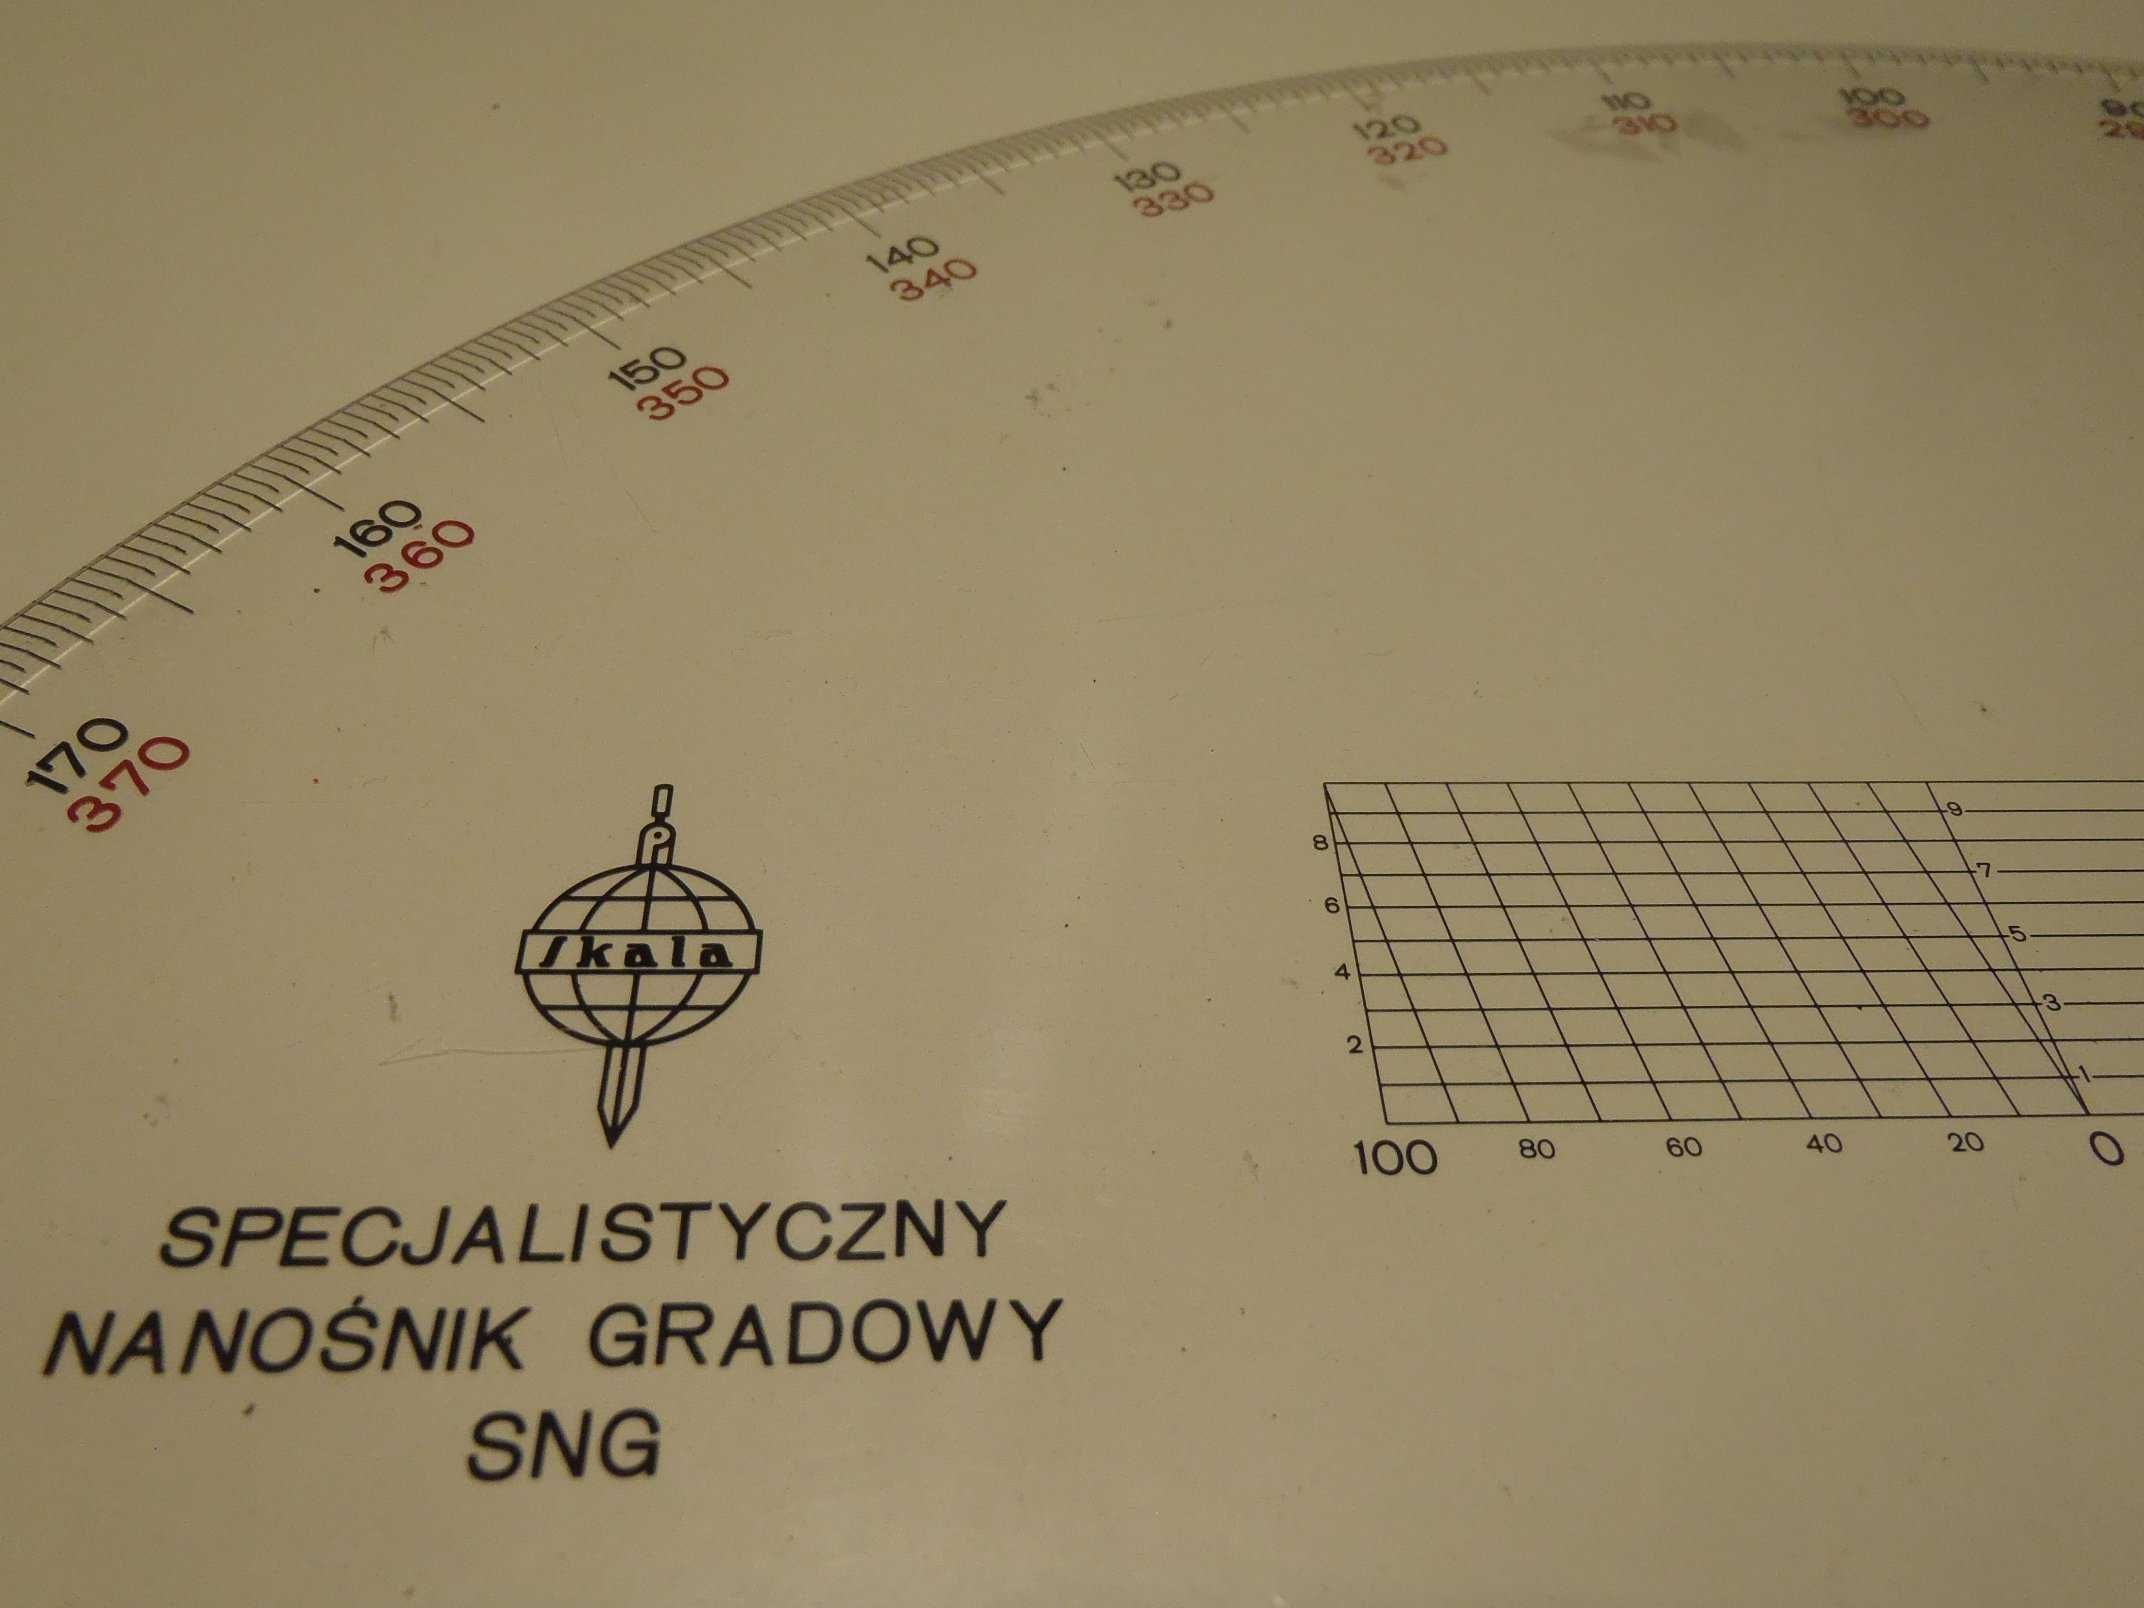 Specjalistyczny Nanośnik Gradowy SNG 1:2500 - Kątomierz geodezyjny